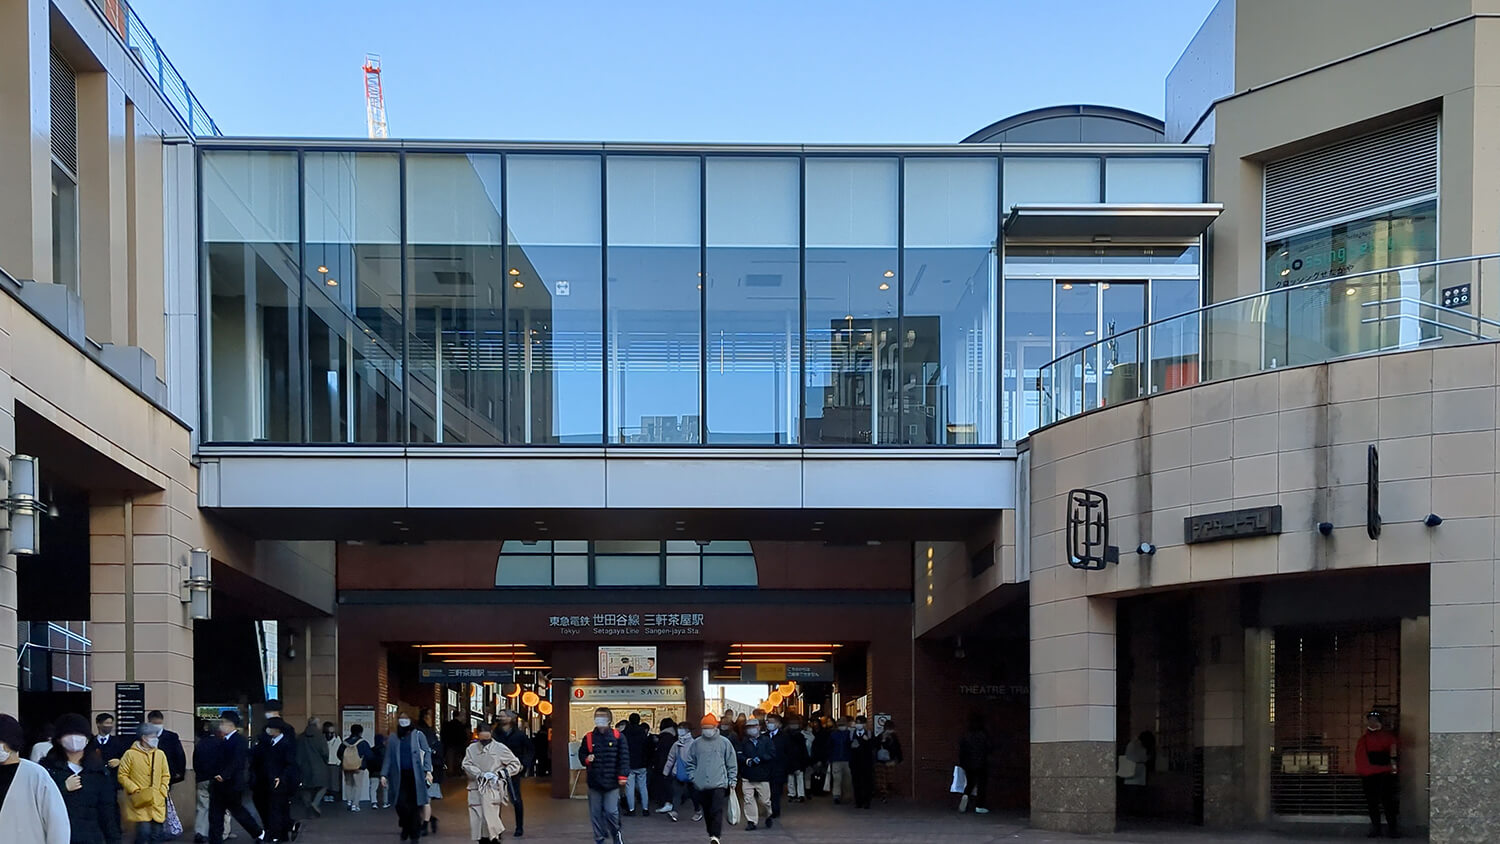 この画像は東急世田谷線三軒茶屋駅の写真です。